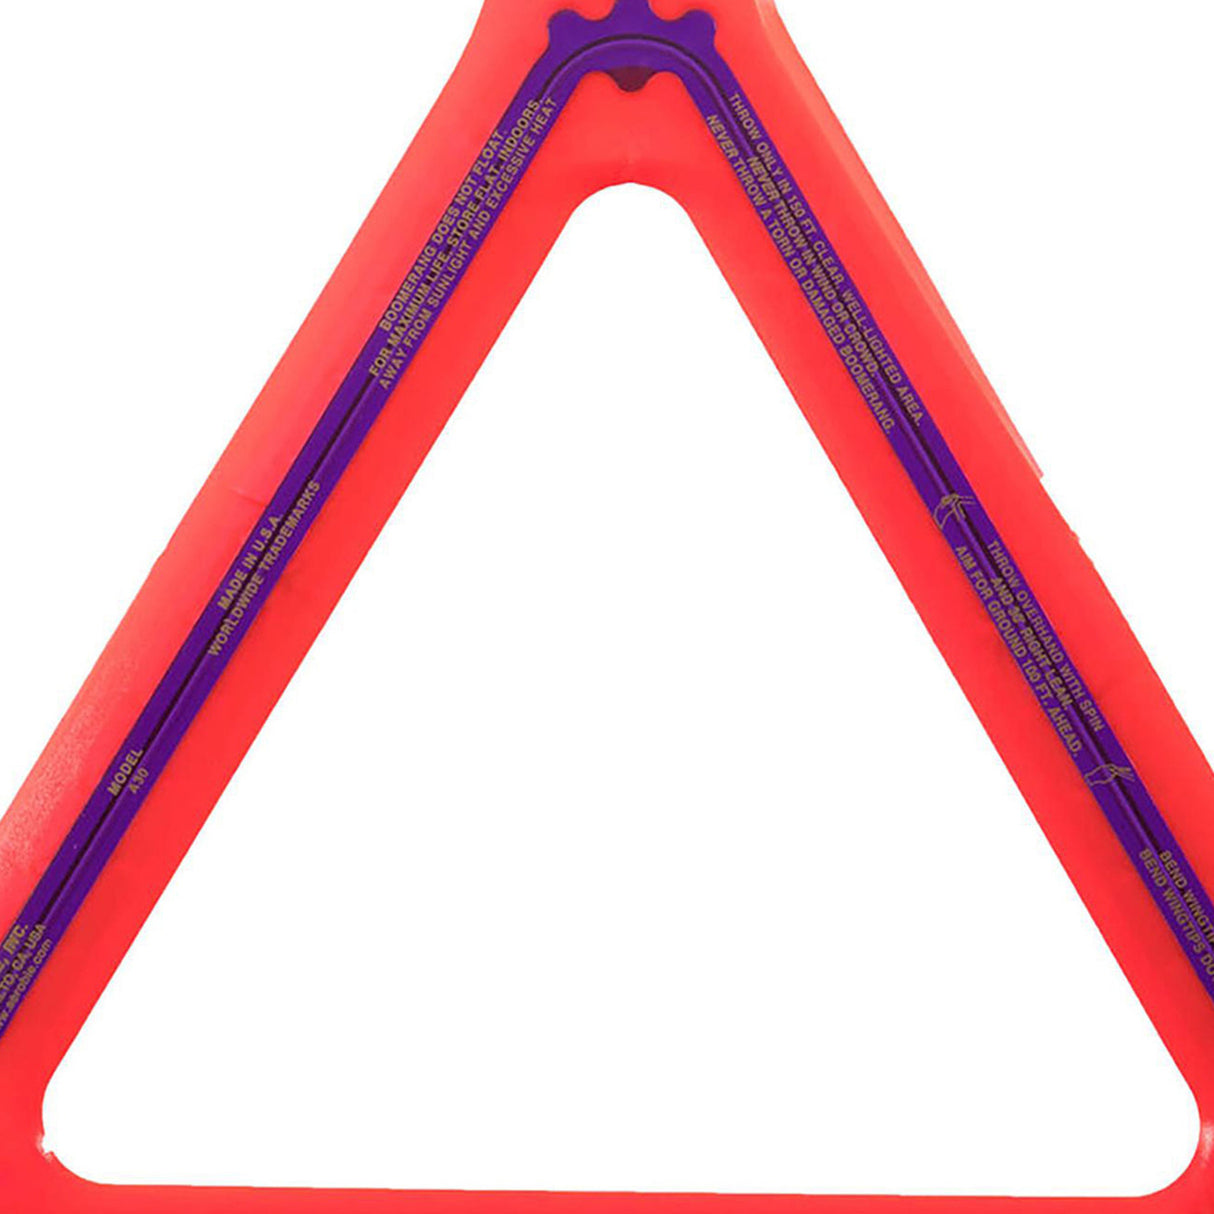 Aerobie Orbiter Boomerang Disc, Red